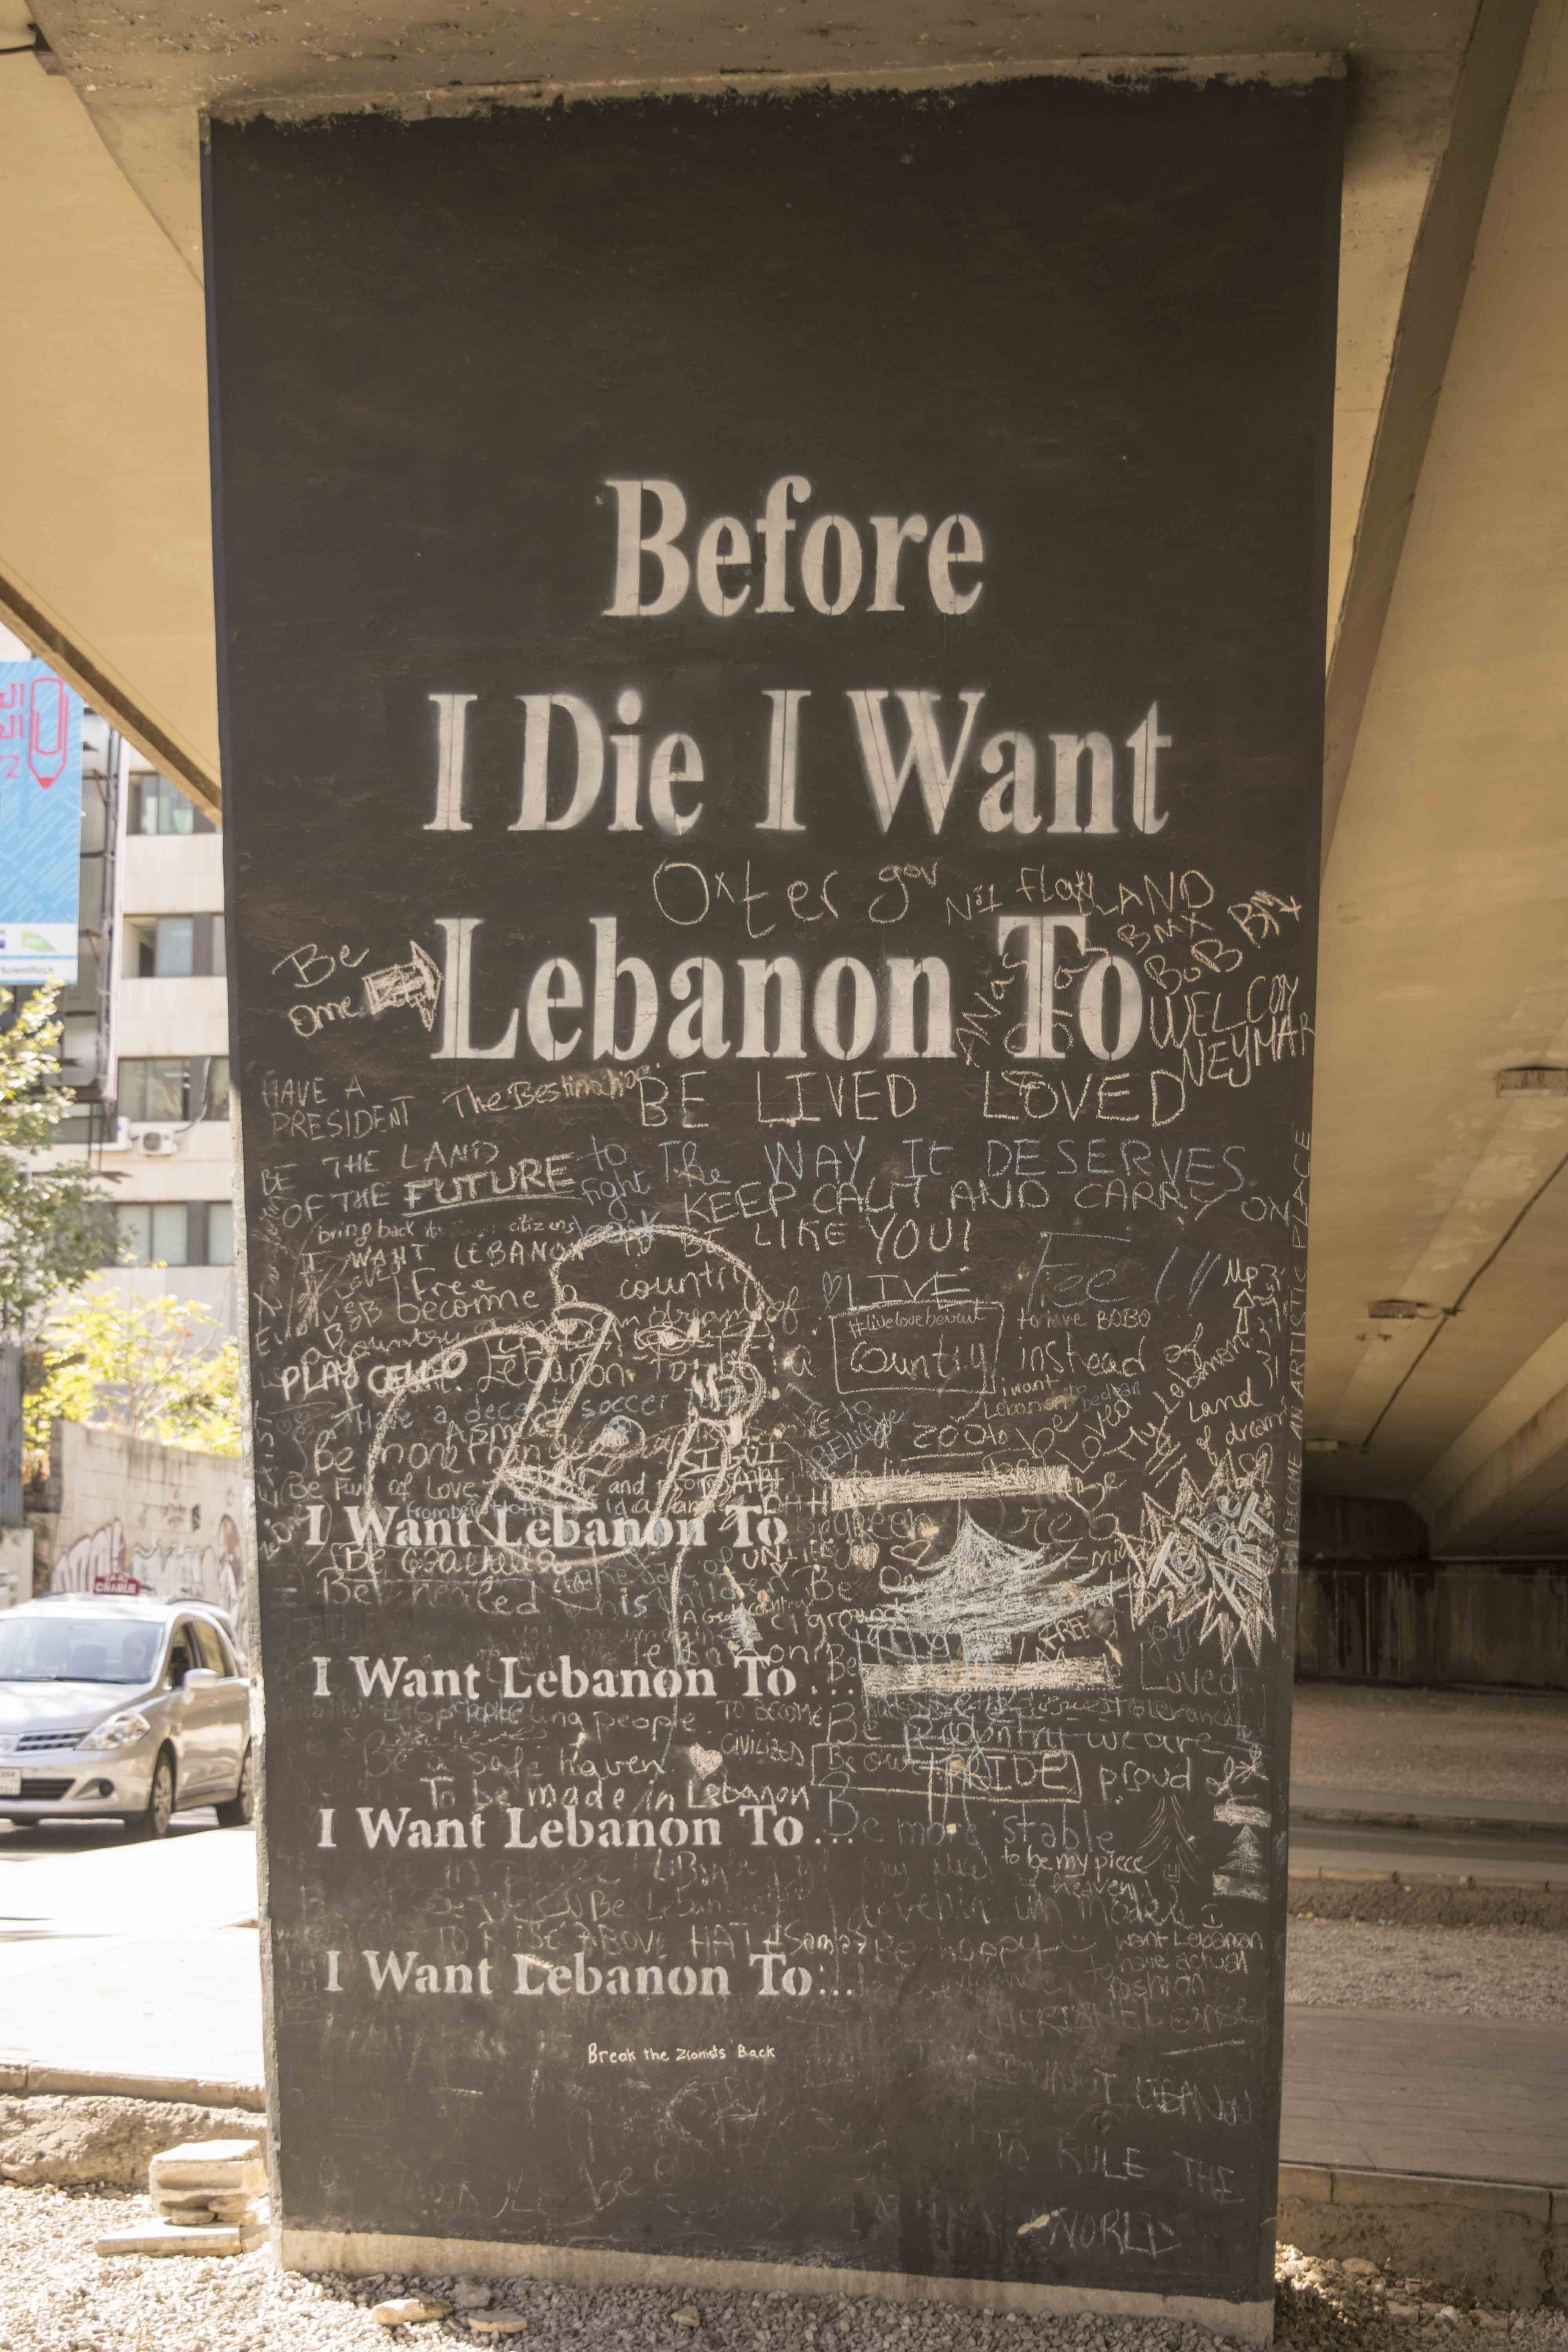 Visite o Líbano antes de morrer! Líbano seguro.